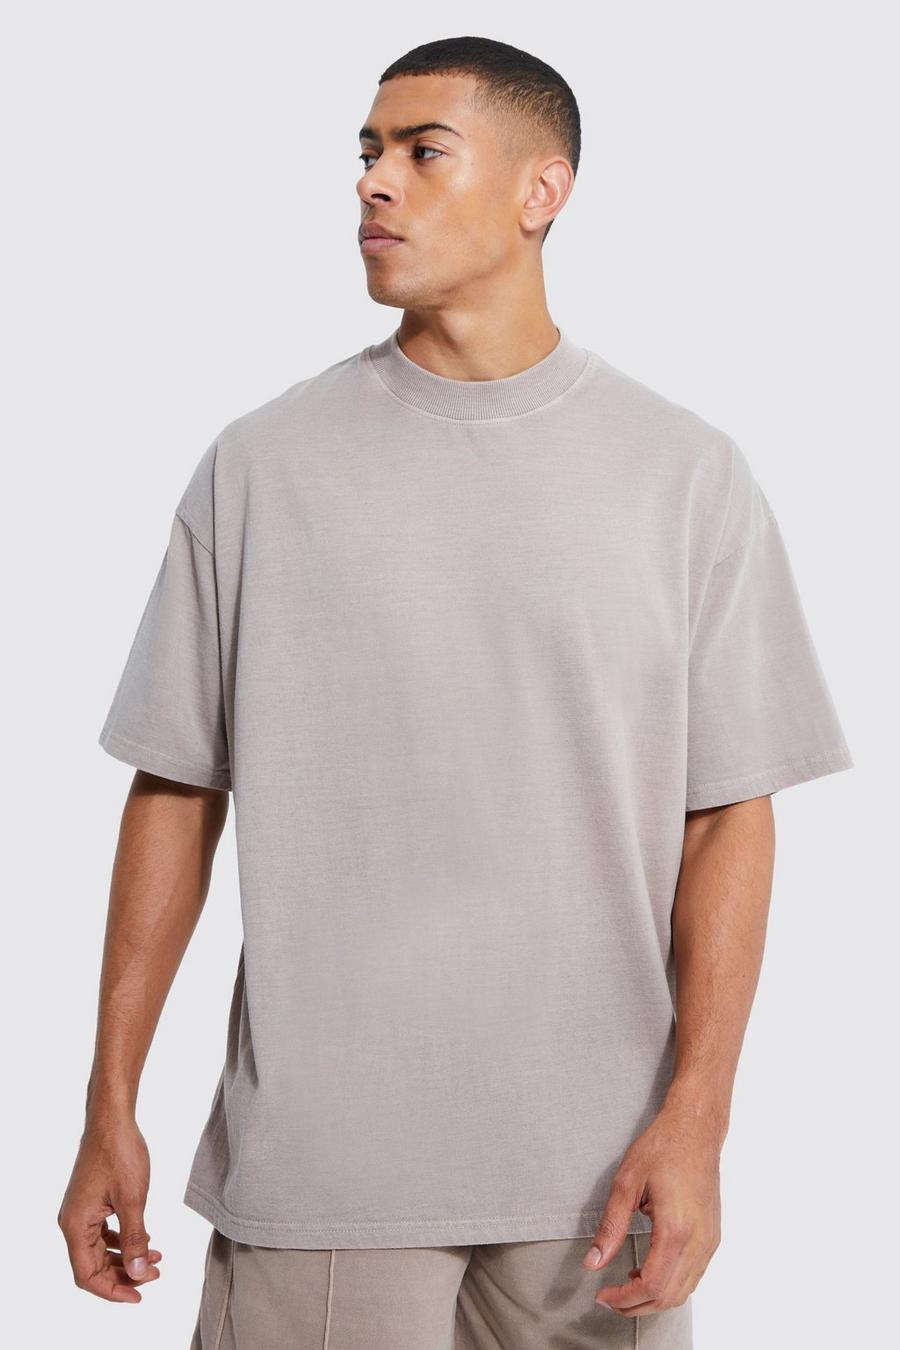 Men's T-Shirt - Grey - XXXL